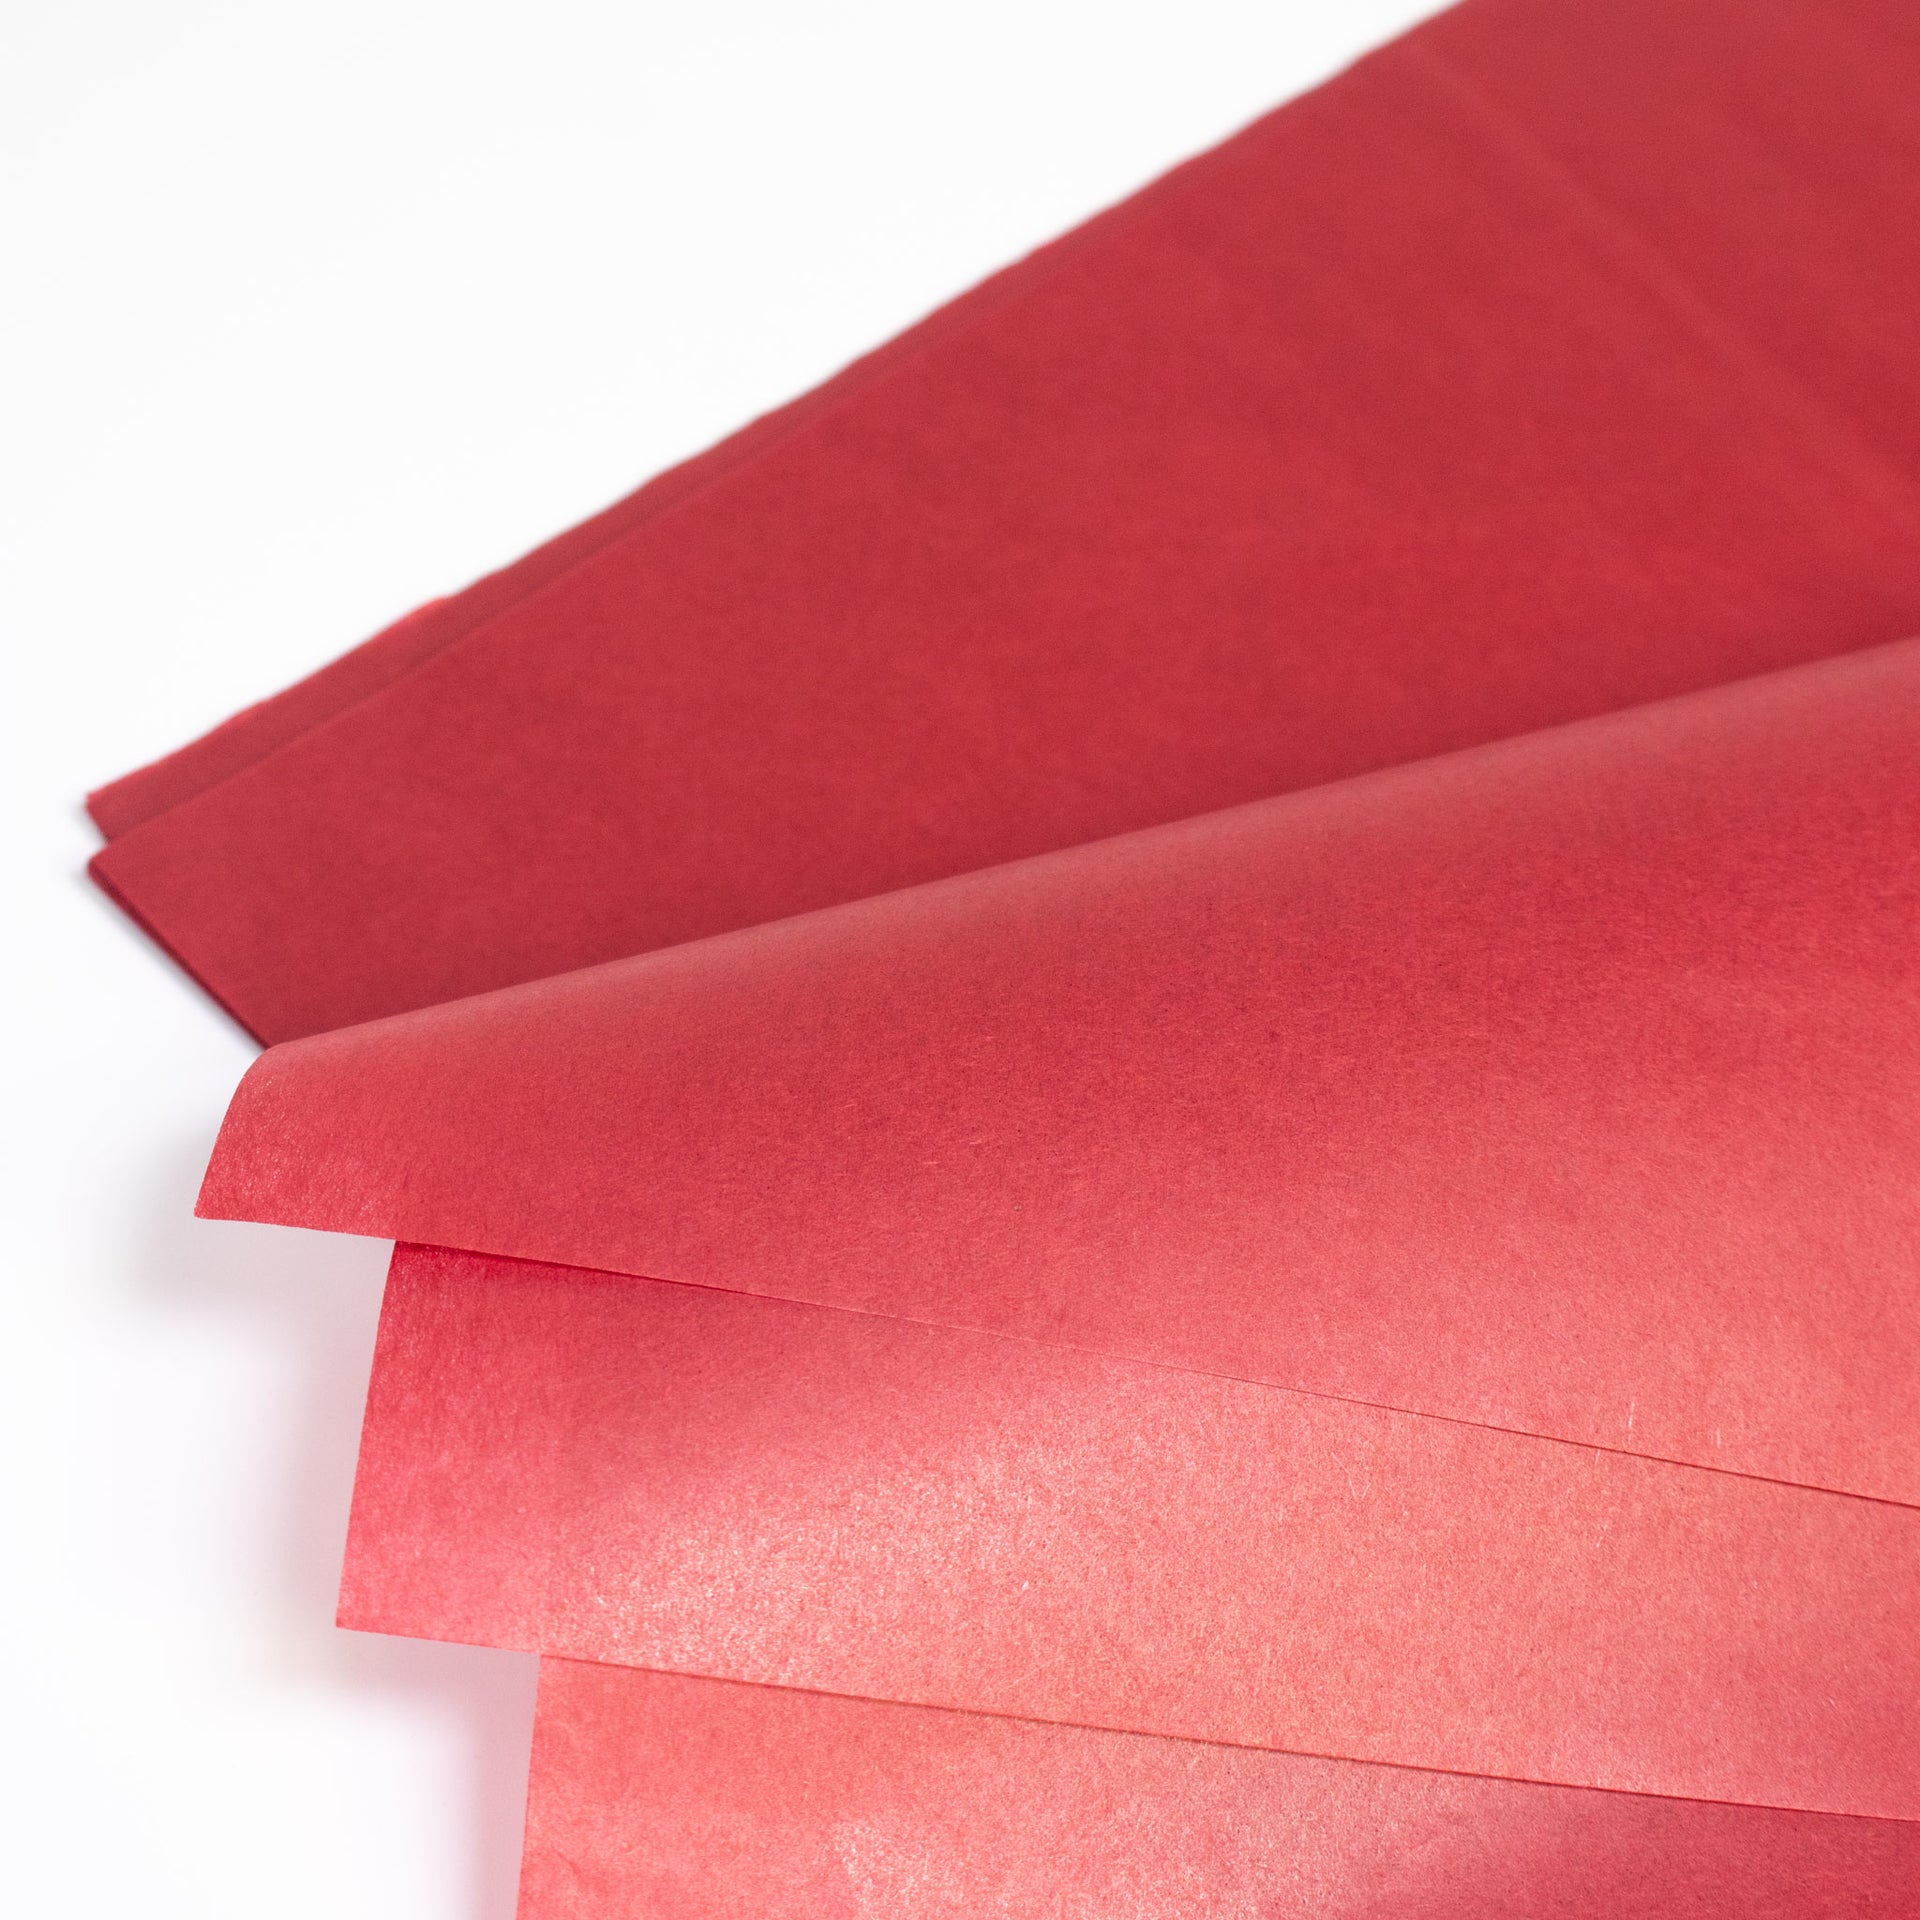 Burgundy Tissue Paper